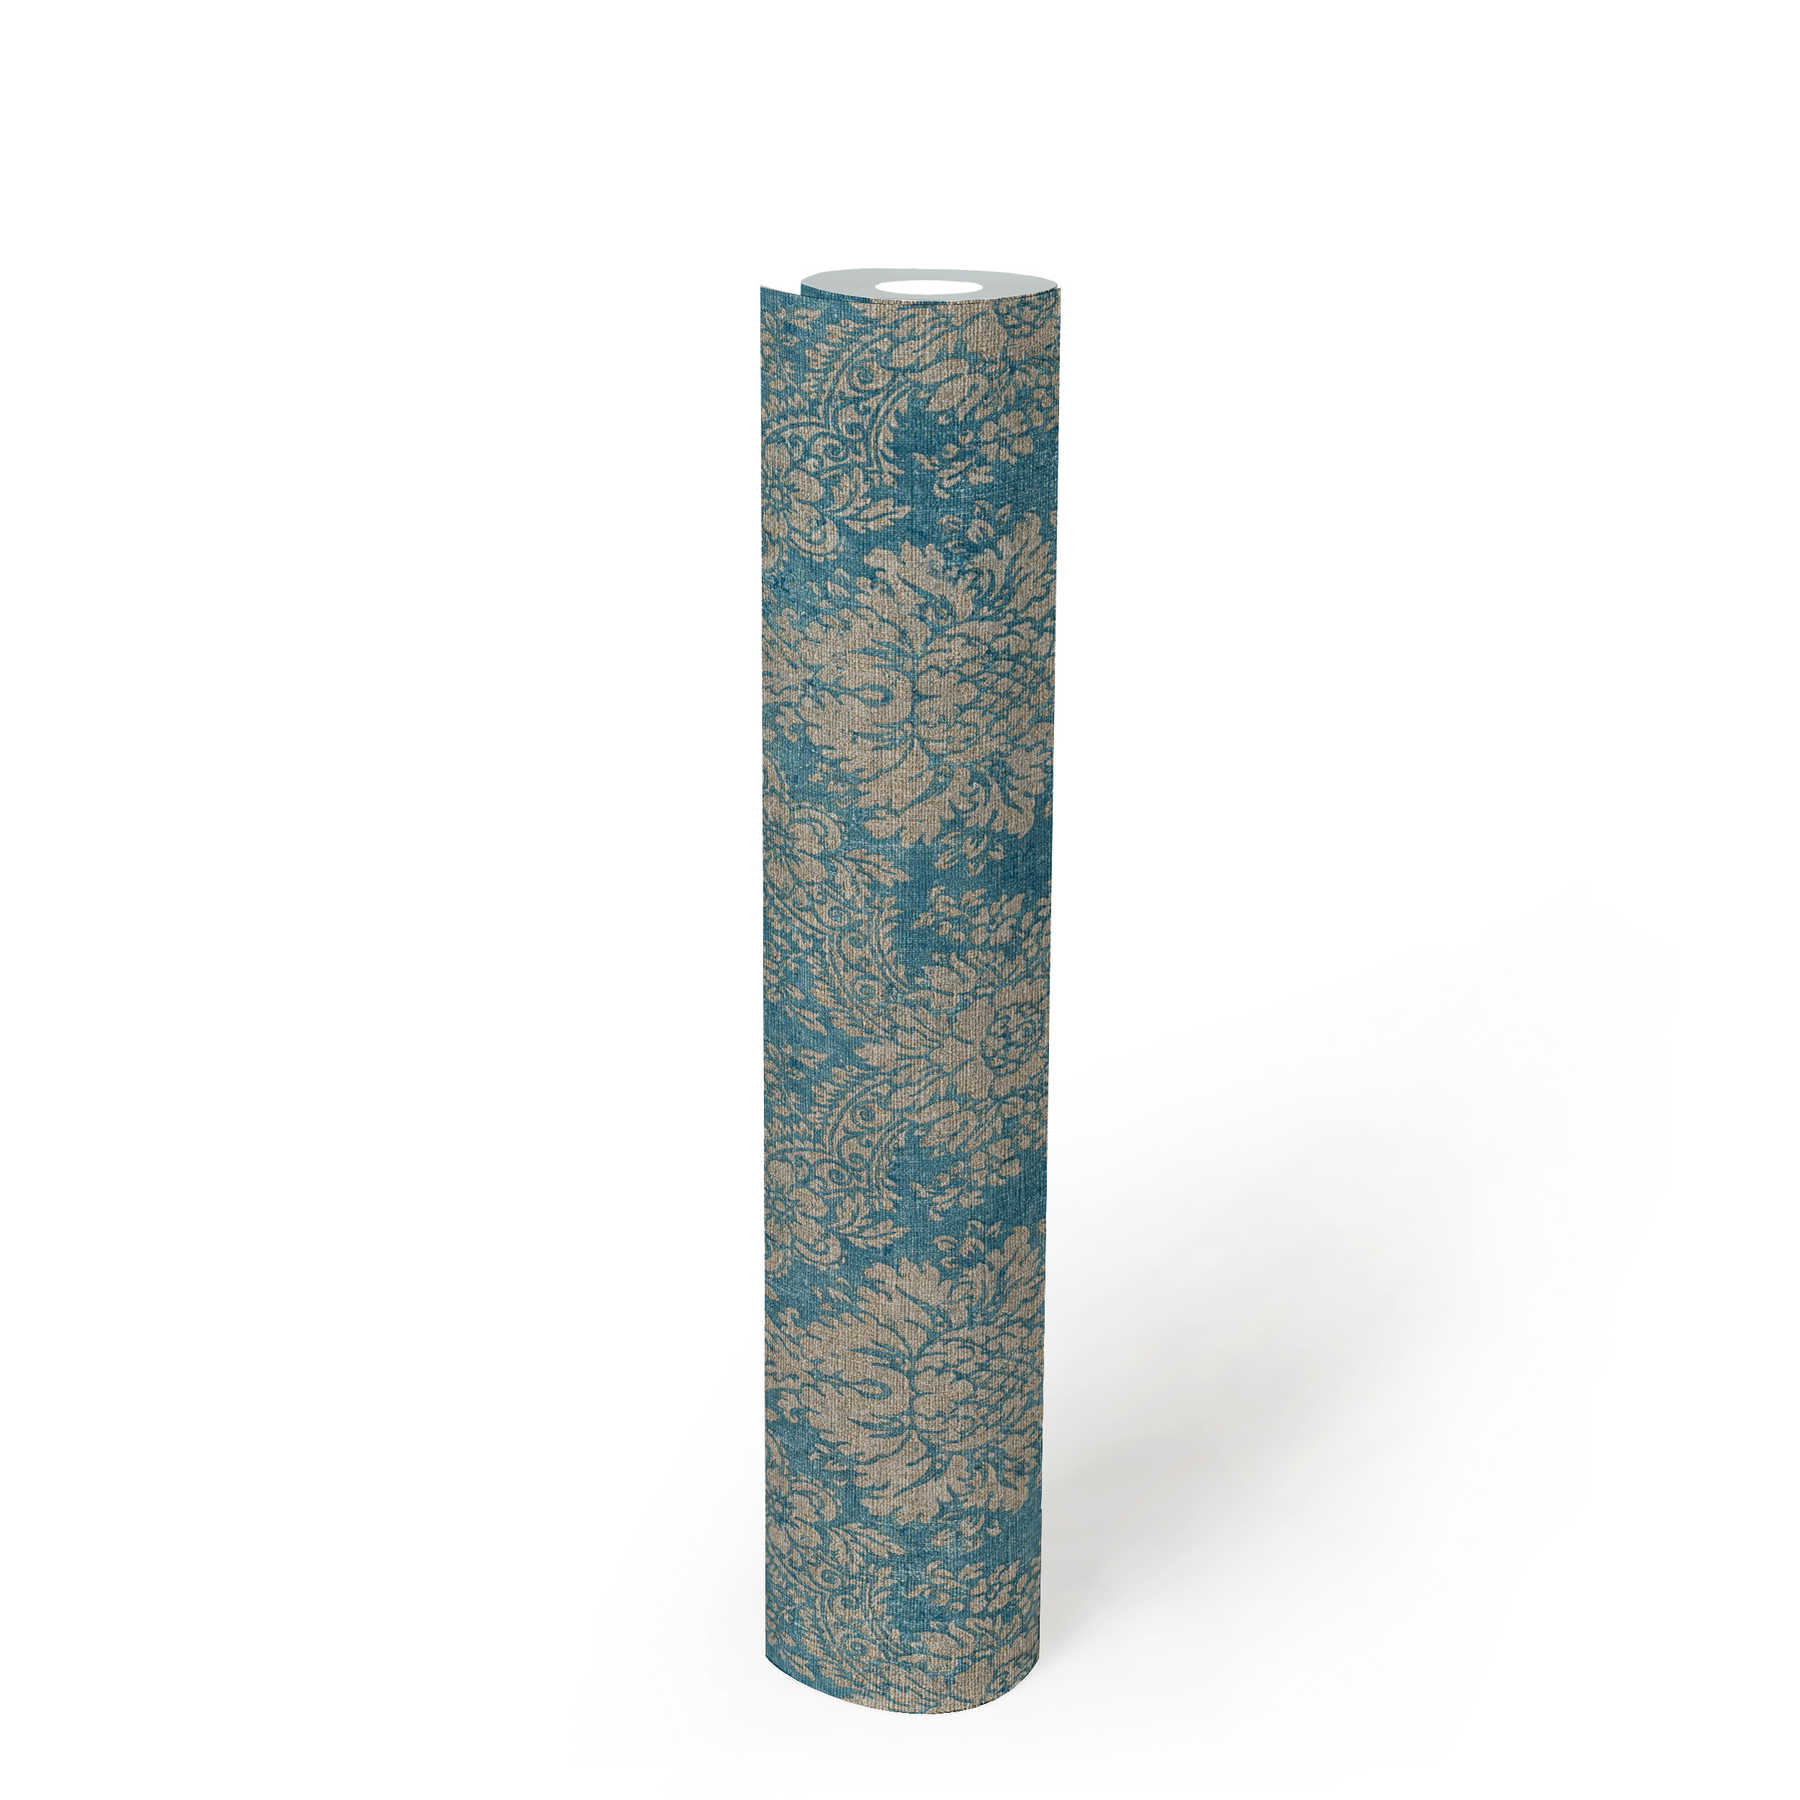             Papel pintado con adornos florales con efecto metálico y aspecto usado - azul, marrón, metálico
        